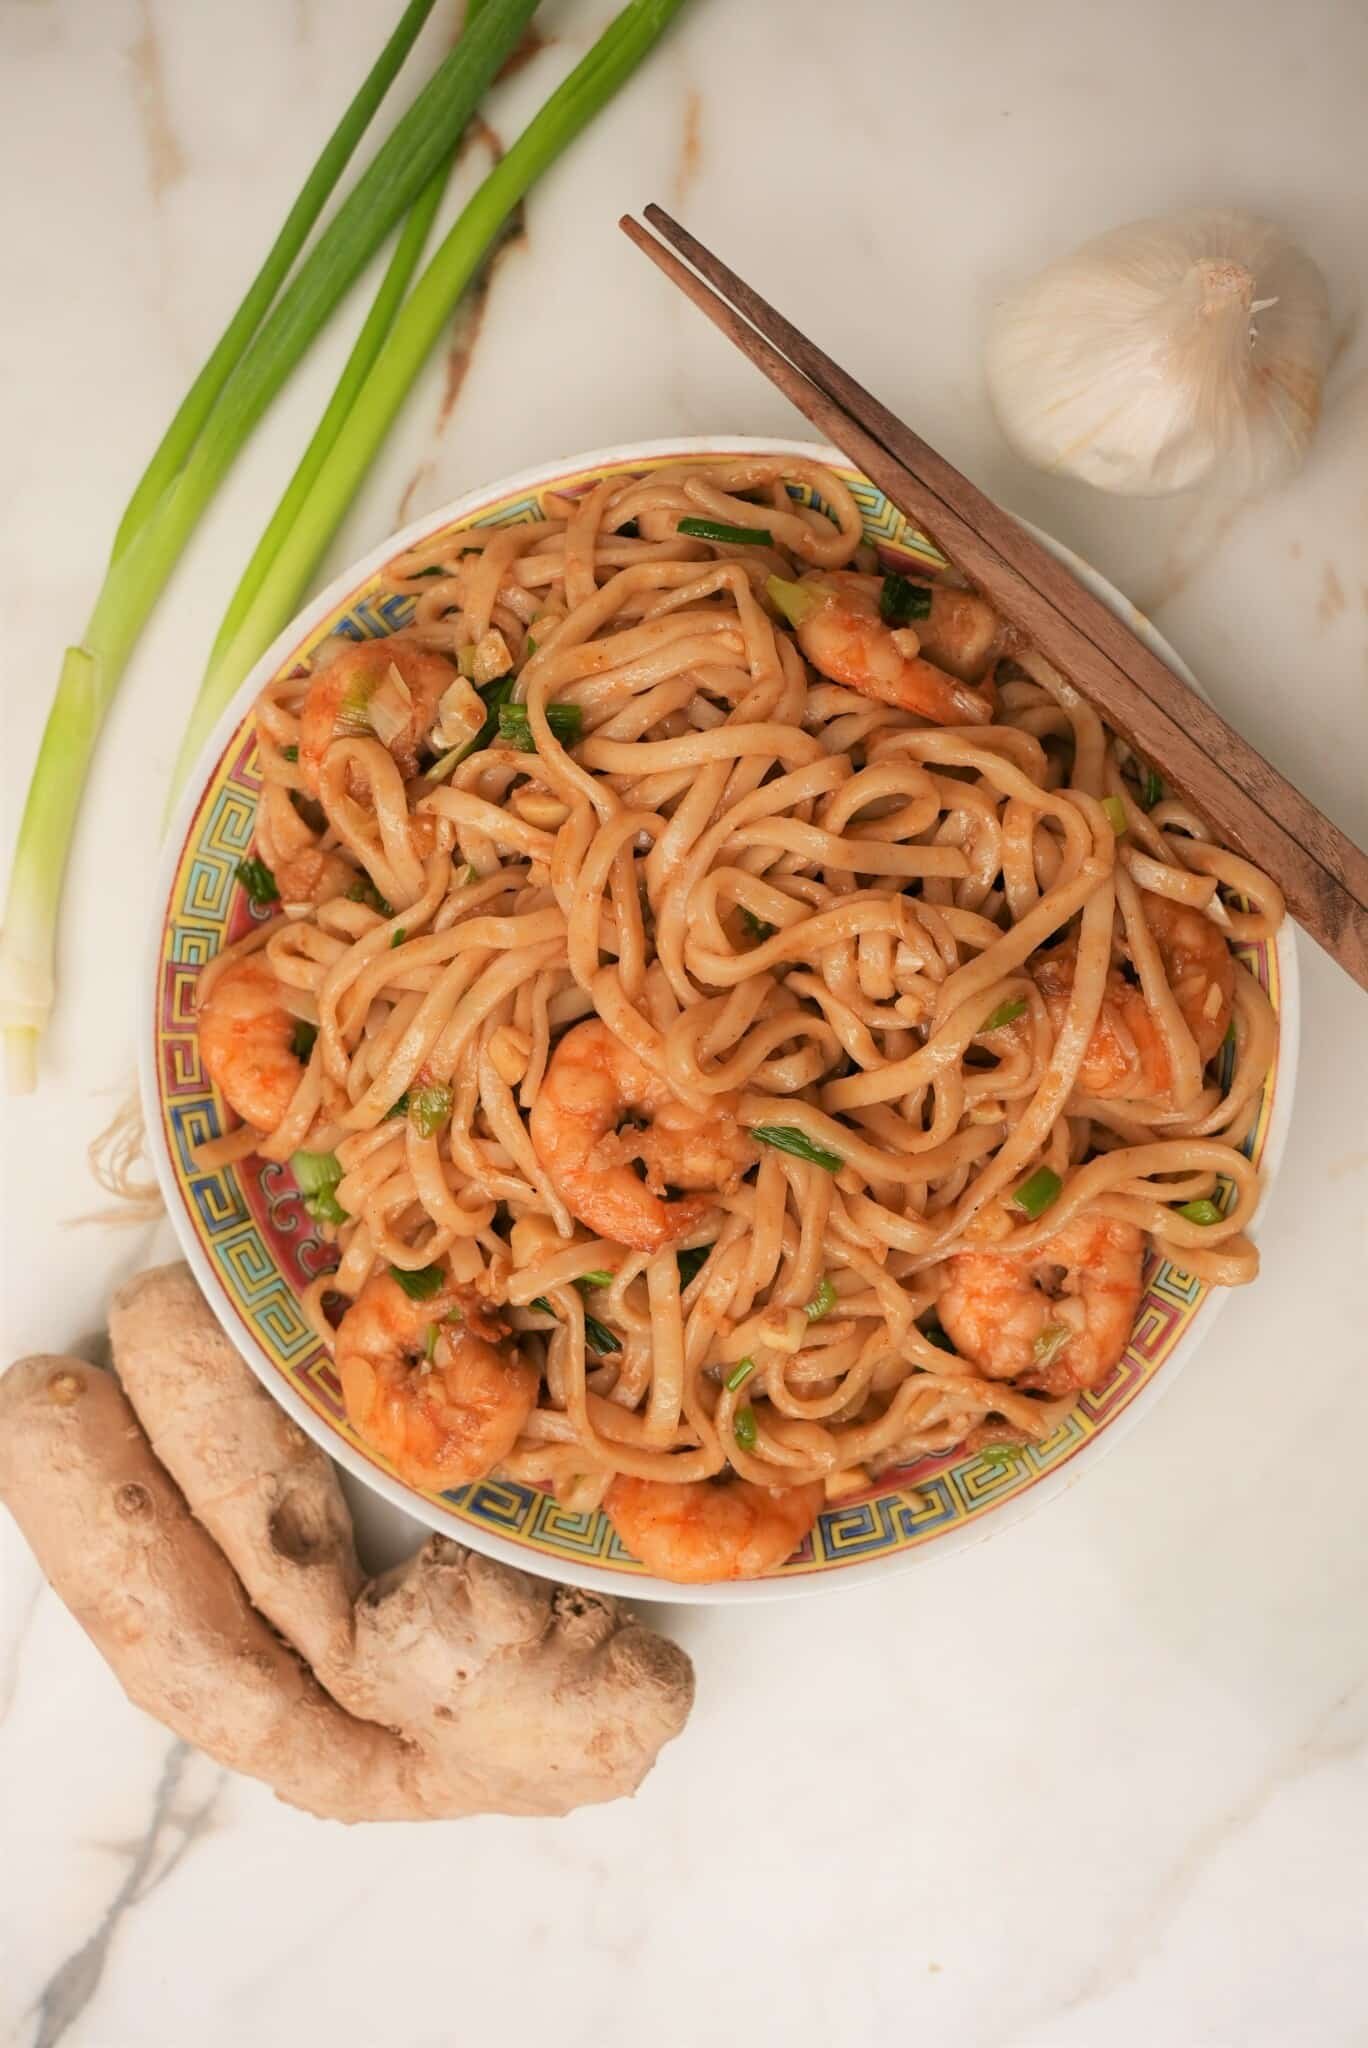 Chinese Style Garlic Shrimp & Veggies Pasta Recipe